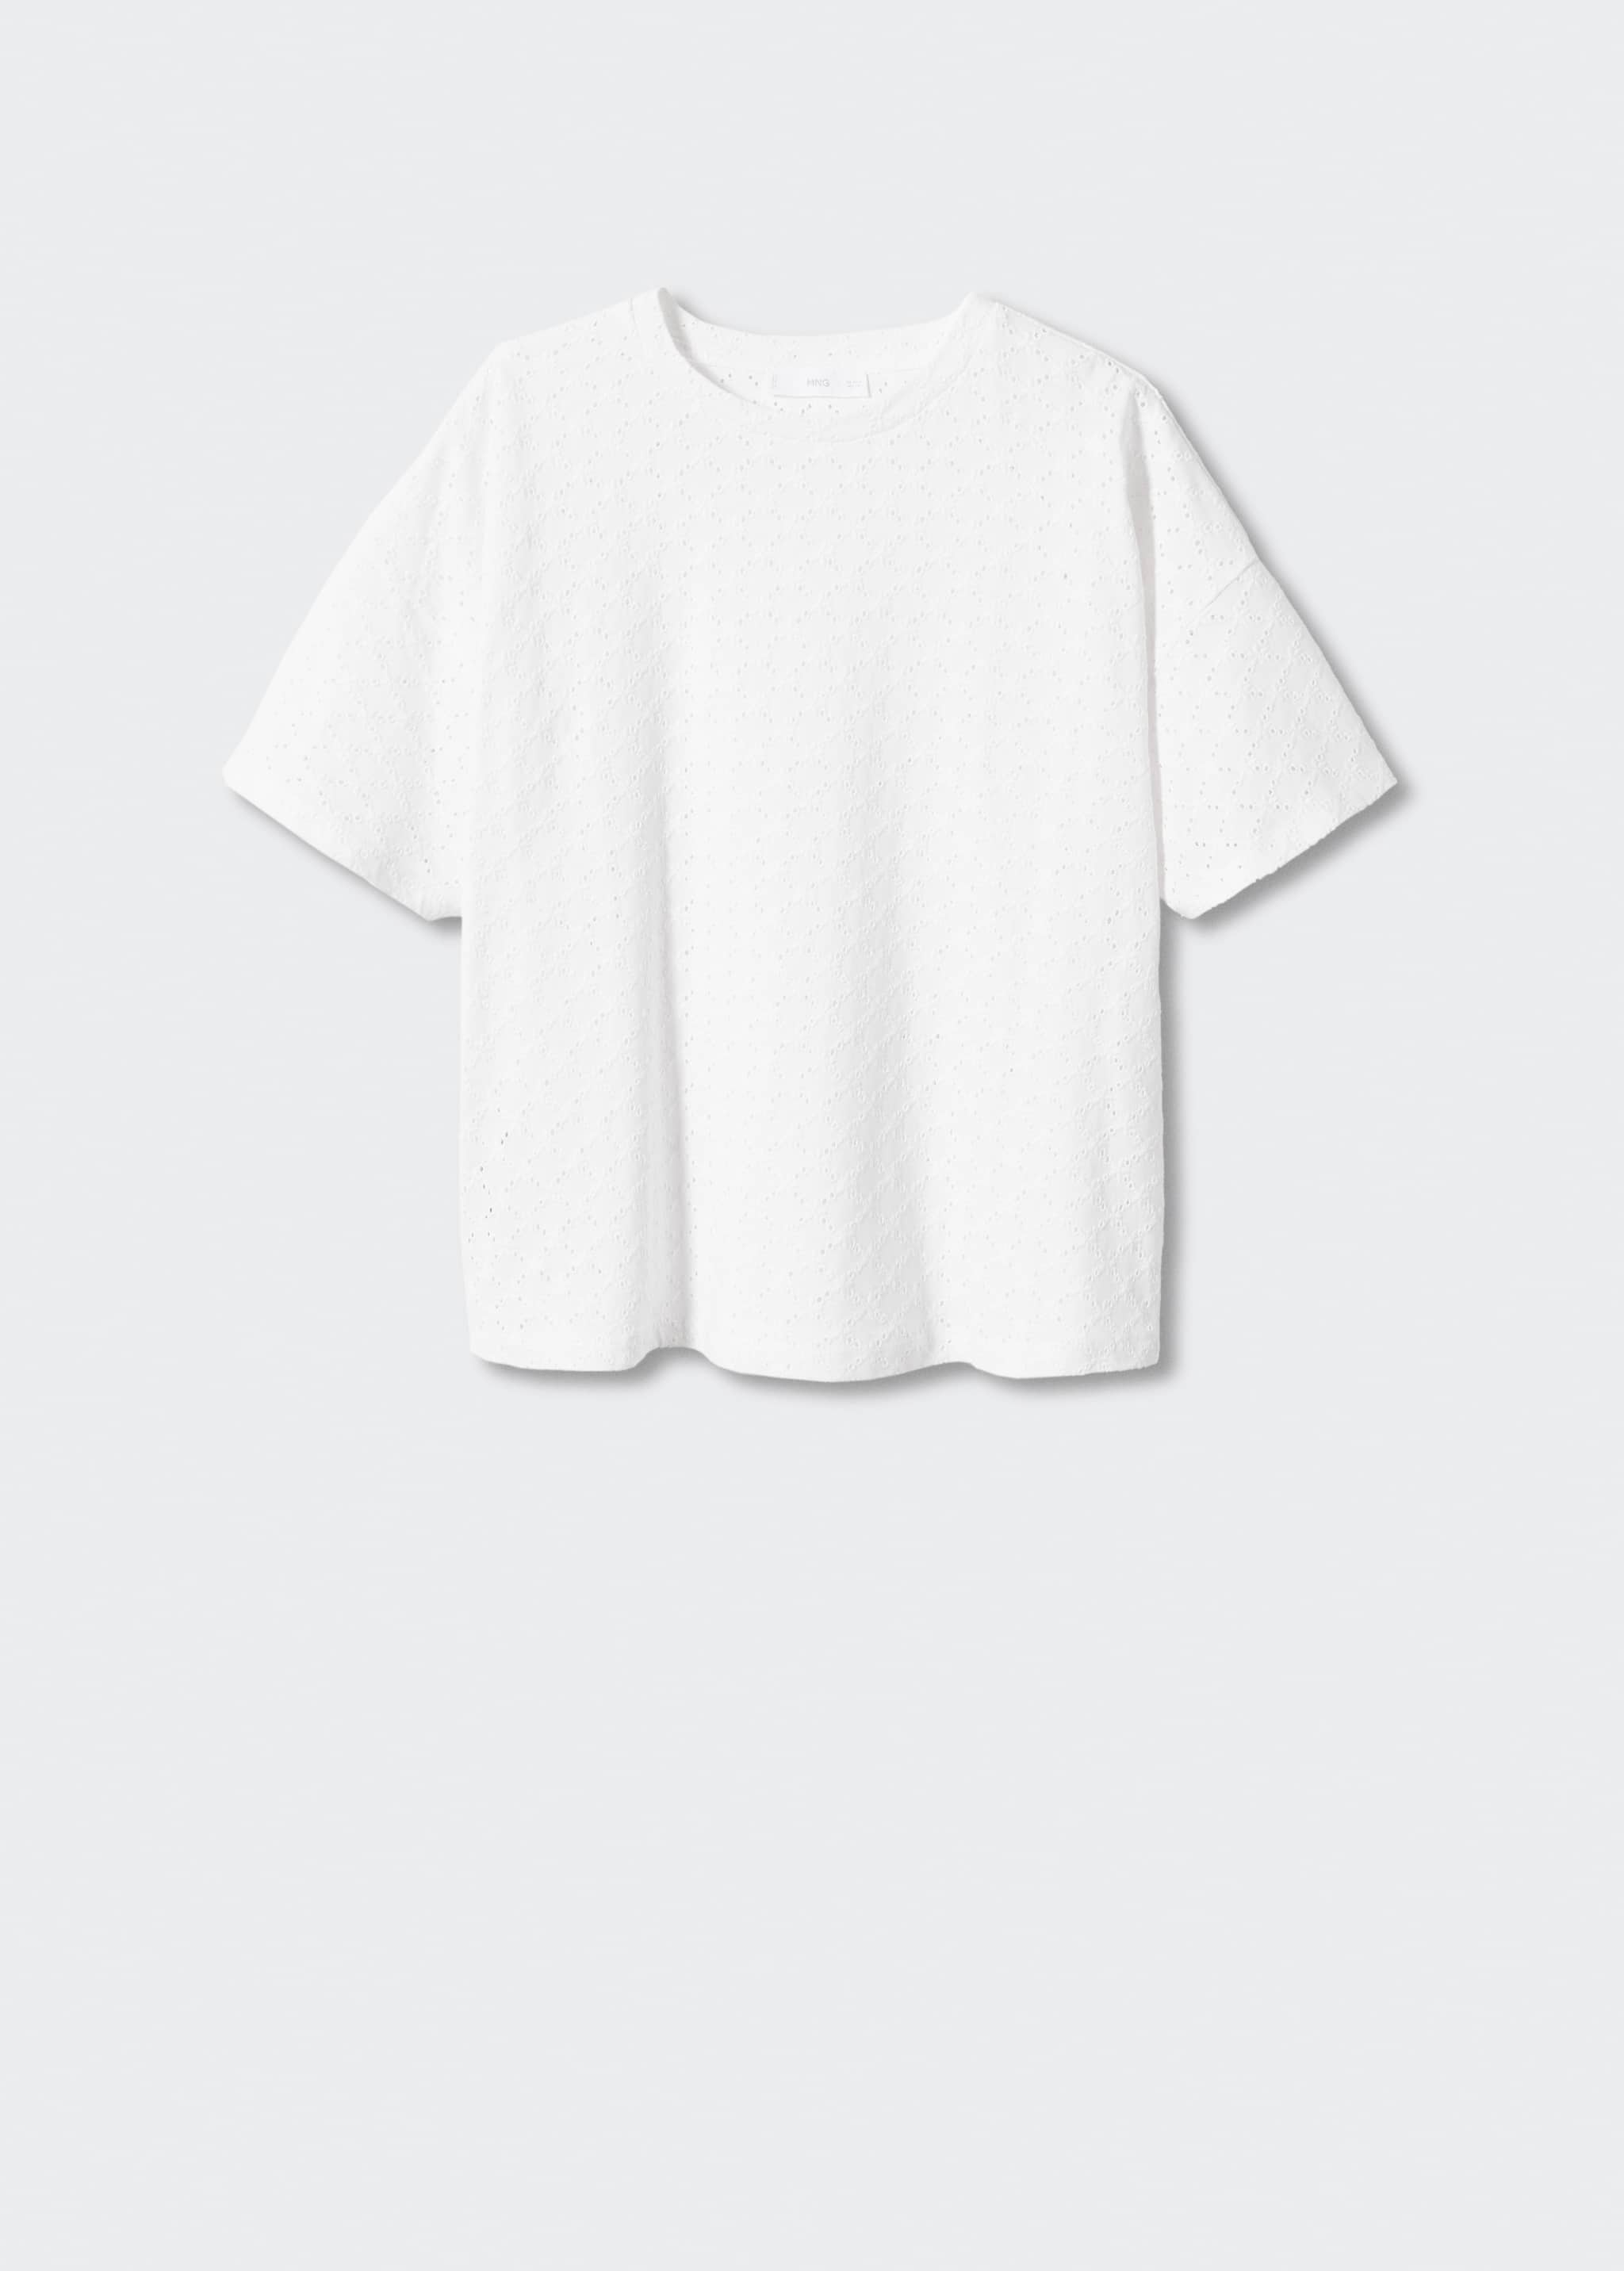 Camiseta calada algodón - Artículo sin modelo